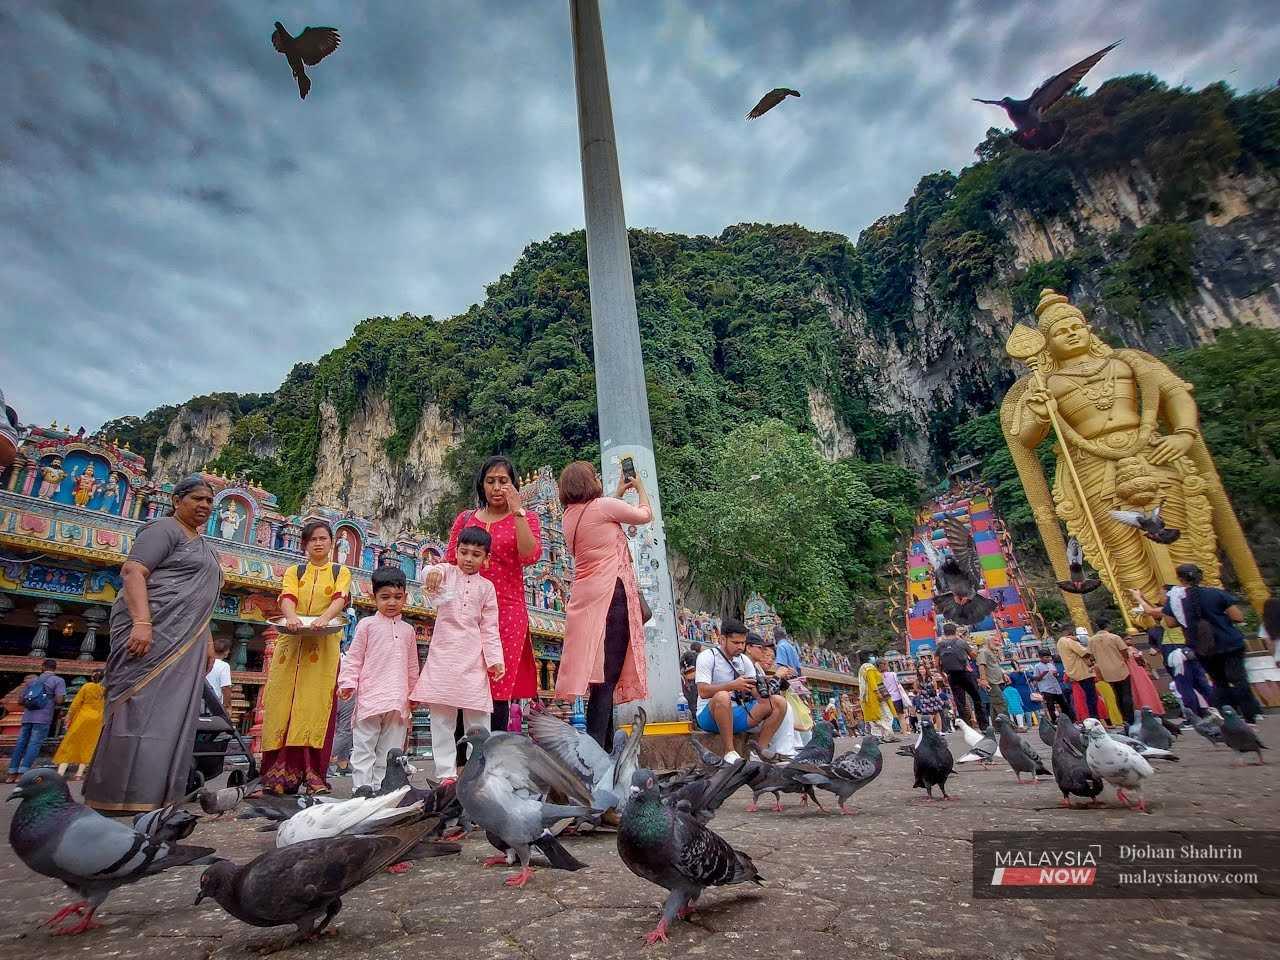 Dua kanak-kanak memberi makan kepada sekumpulan burung merpati sewaktu hadir ke kuil di Batu Caves bagi mengikuti upacara keagamaan sempena meraikan Hari Thaipusam yang akan disambut Ahad ini, 2 Februari.